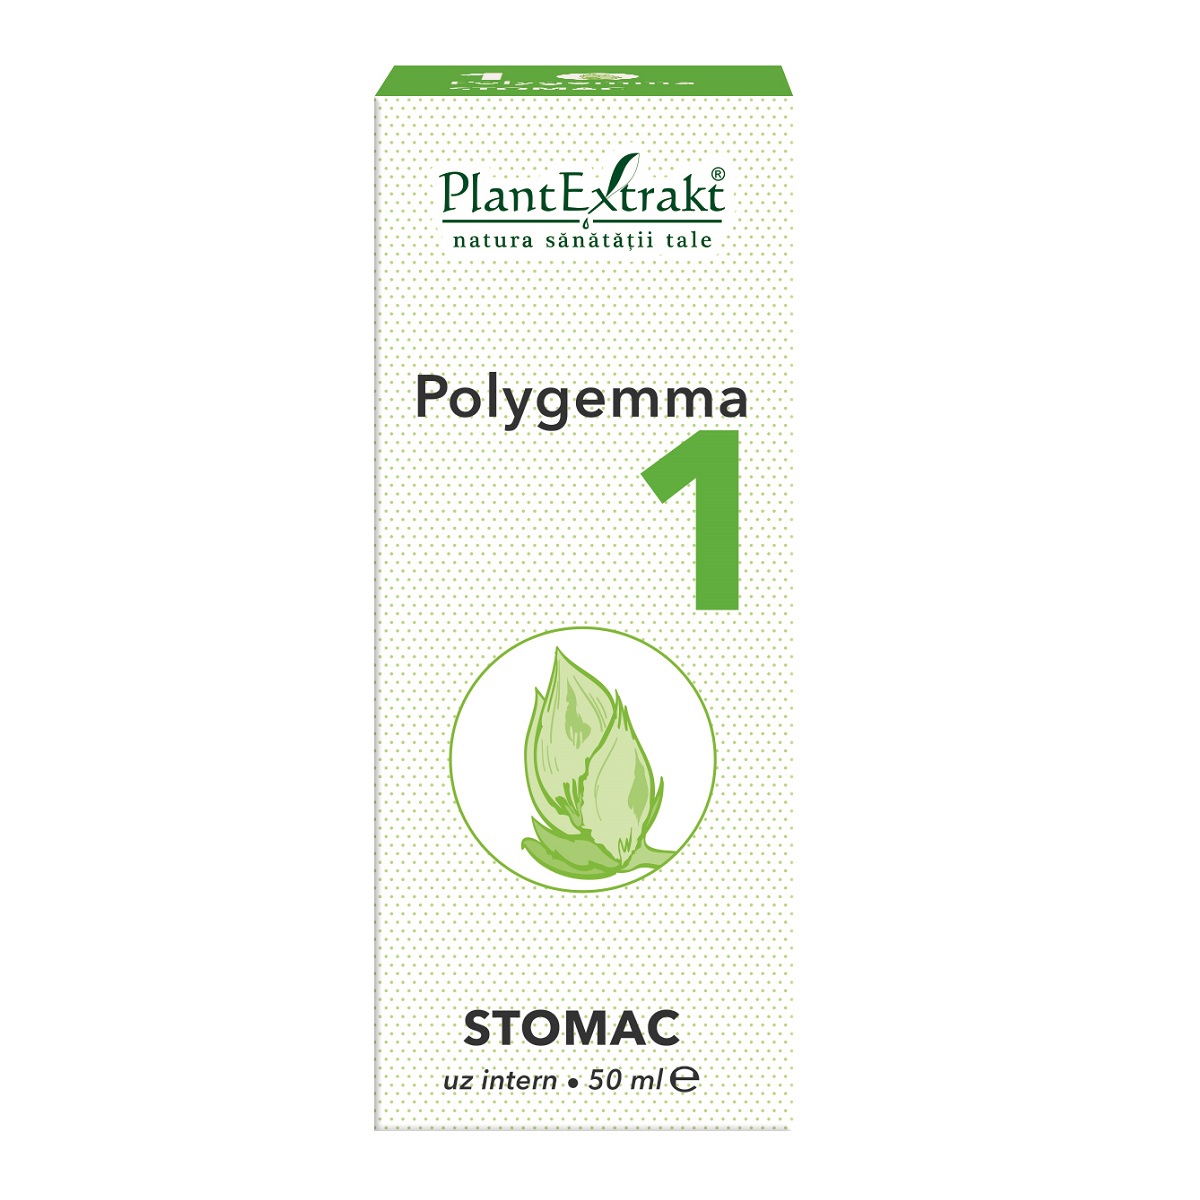 polygemma 11 plantextrakt cancer bucal por vph